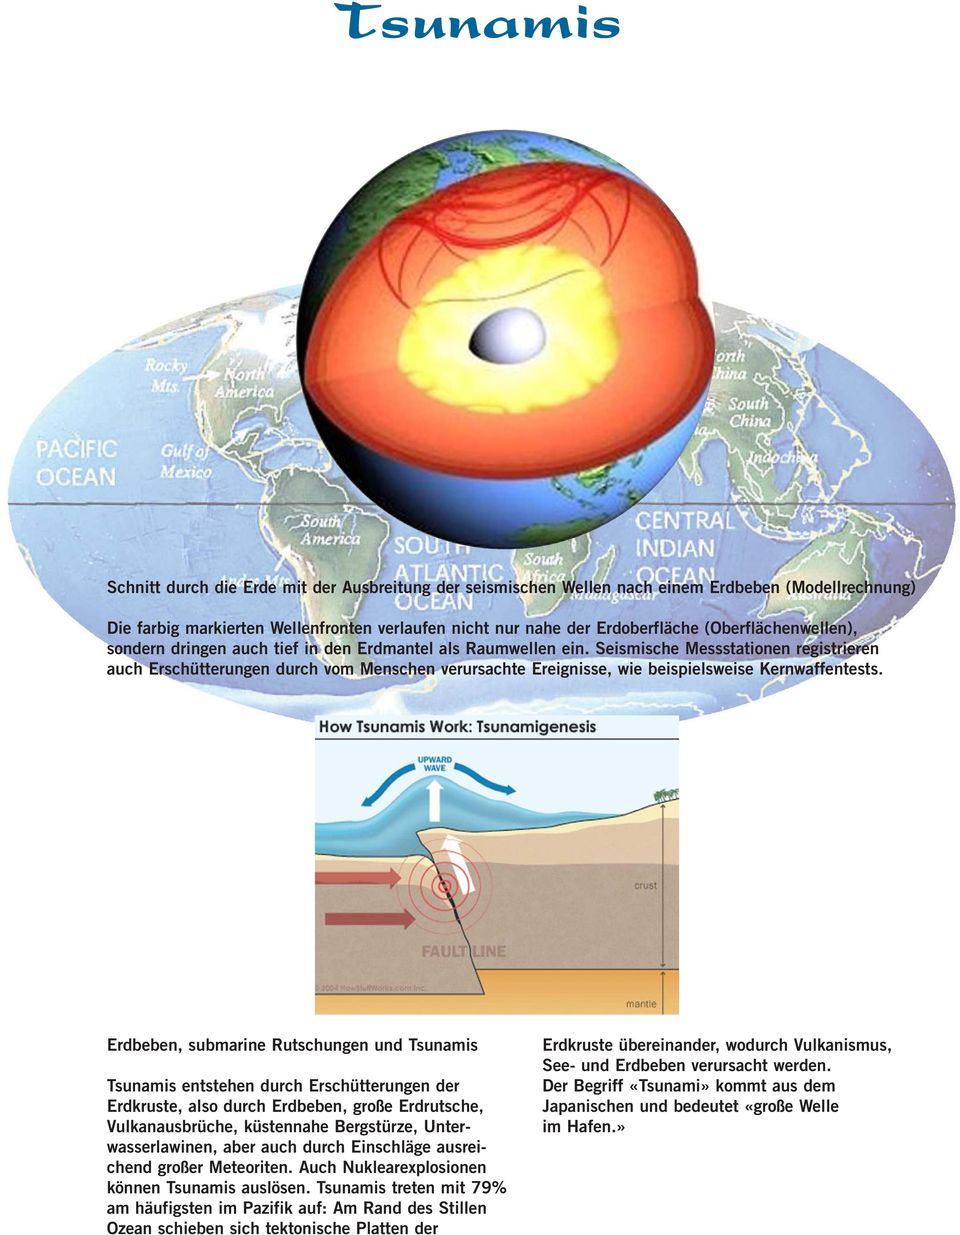 Seismische Messstationen registrieren auch Erschütterungen durch vom Menschen verursachte Ereignisse, wie beispielsweise Kernwaffentests.